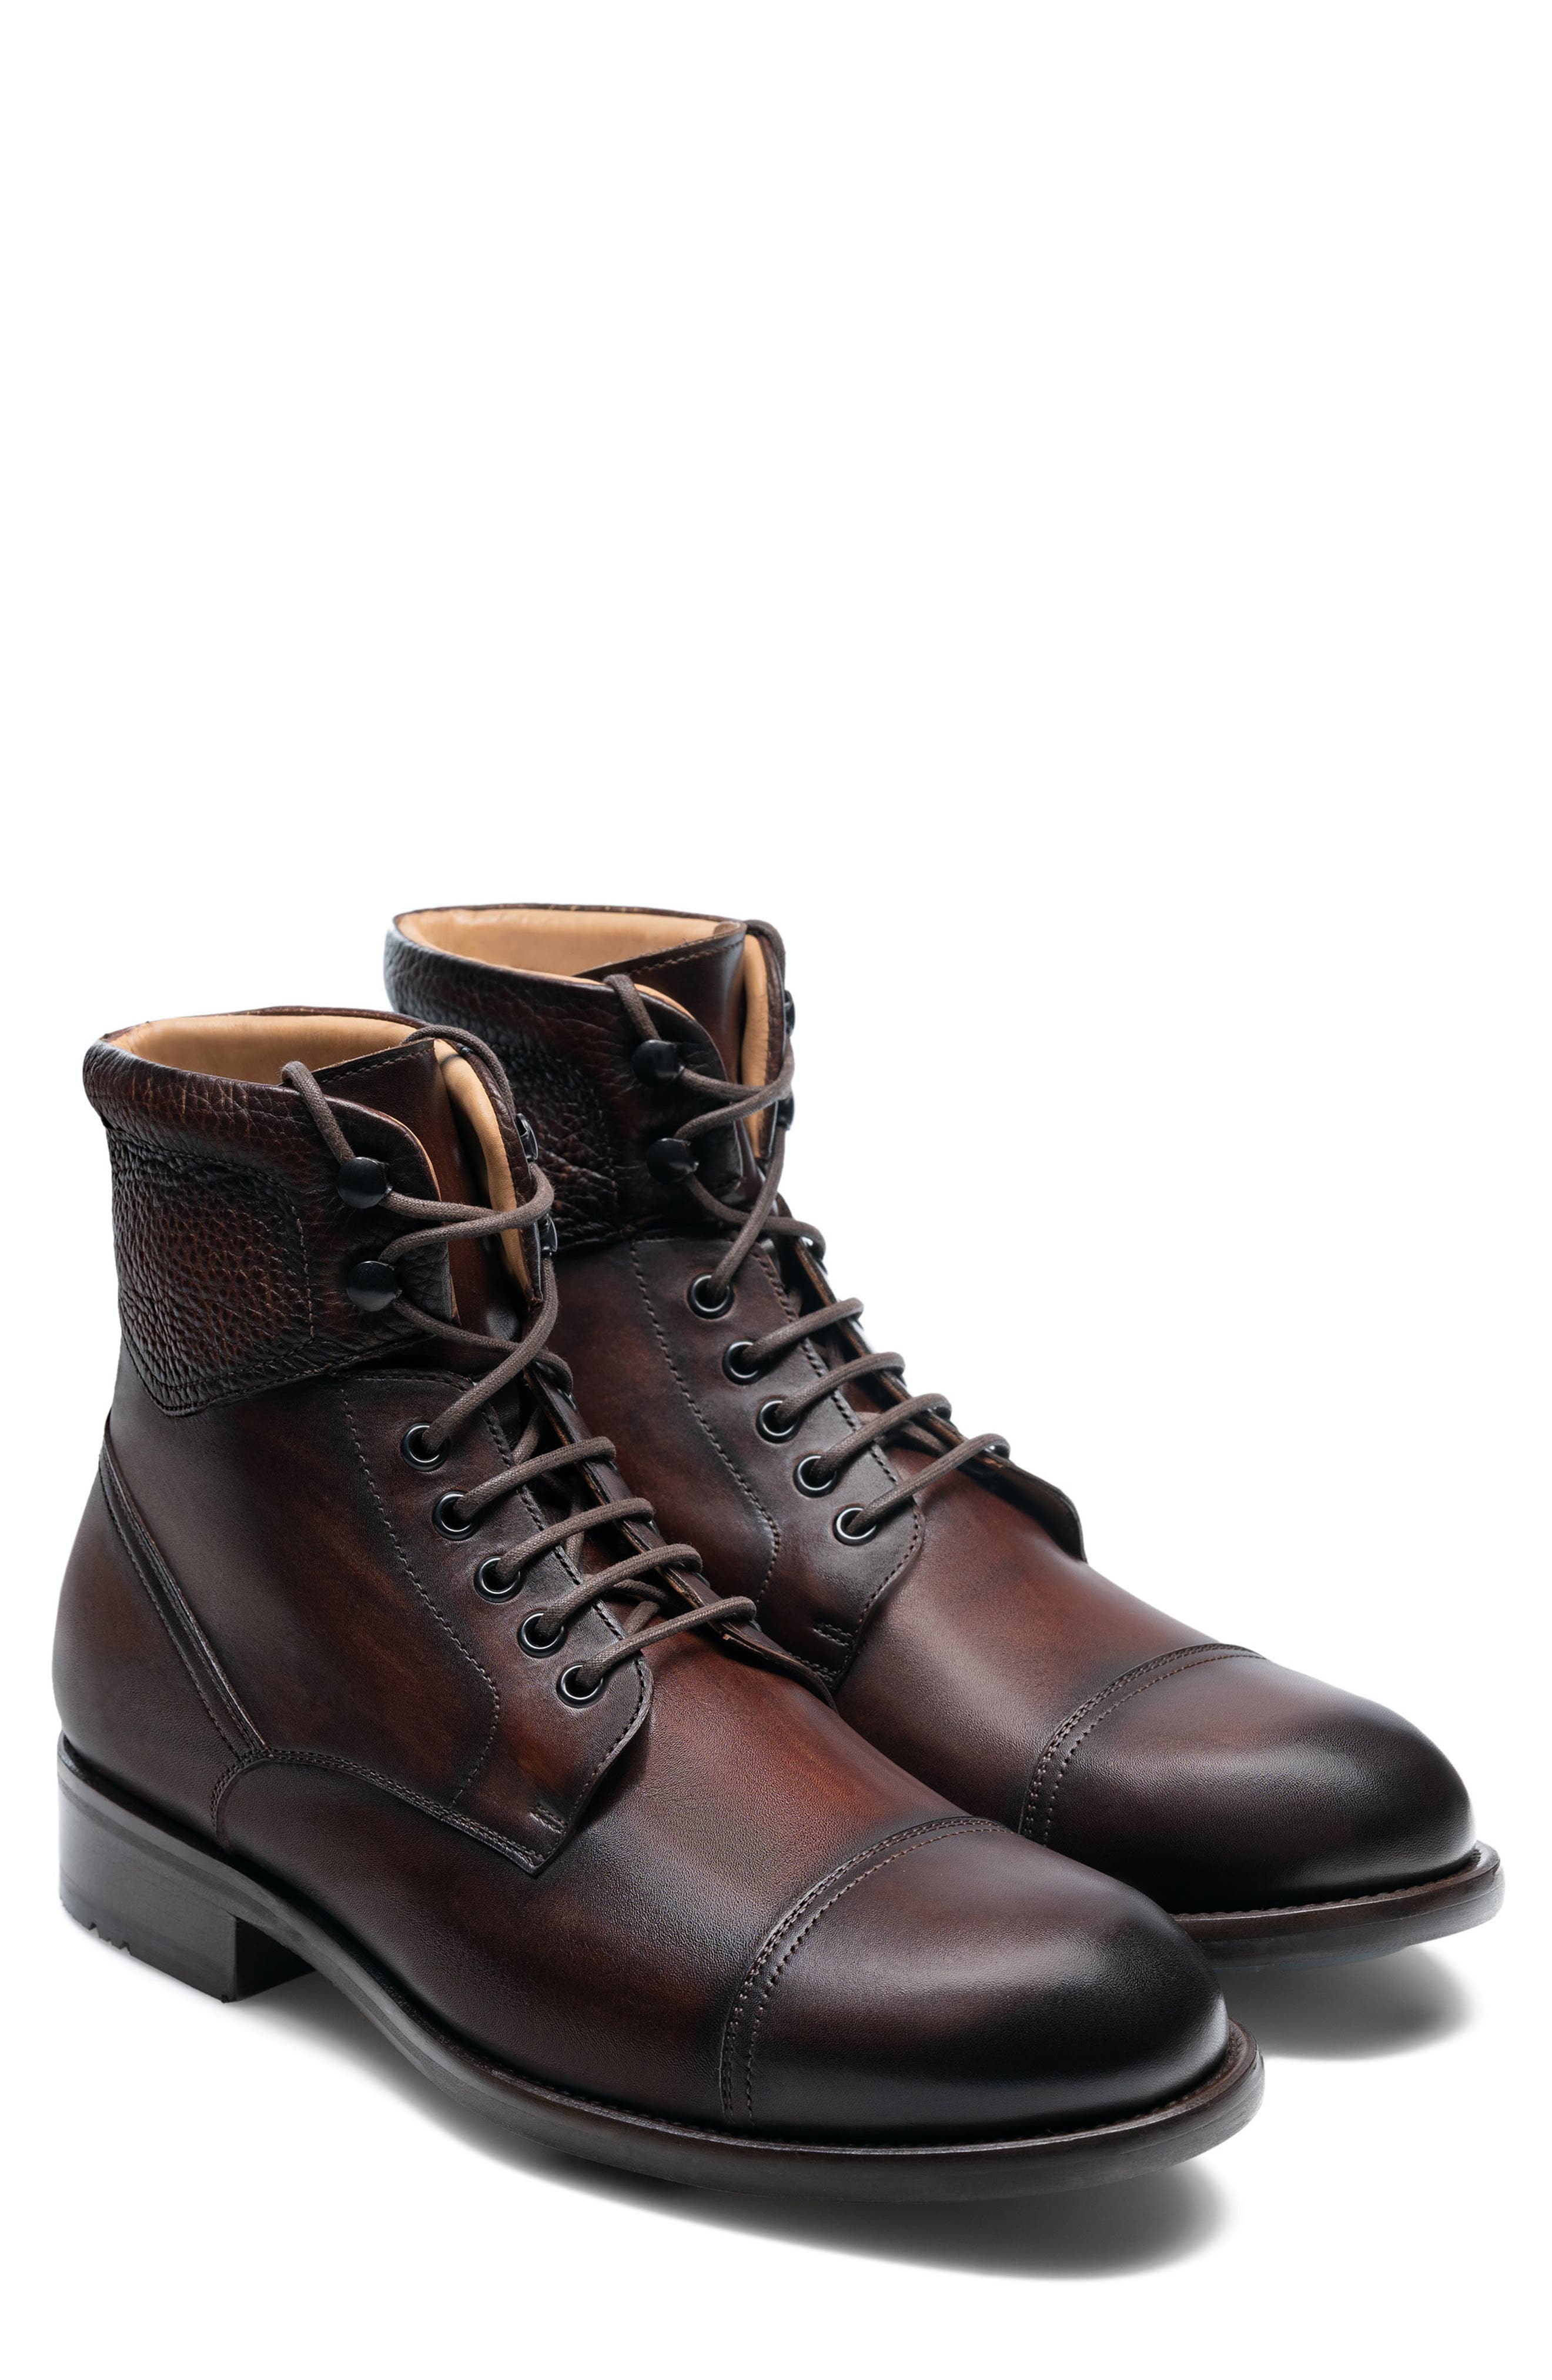 magnanni boots sale